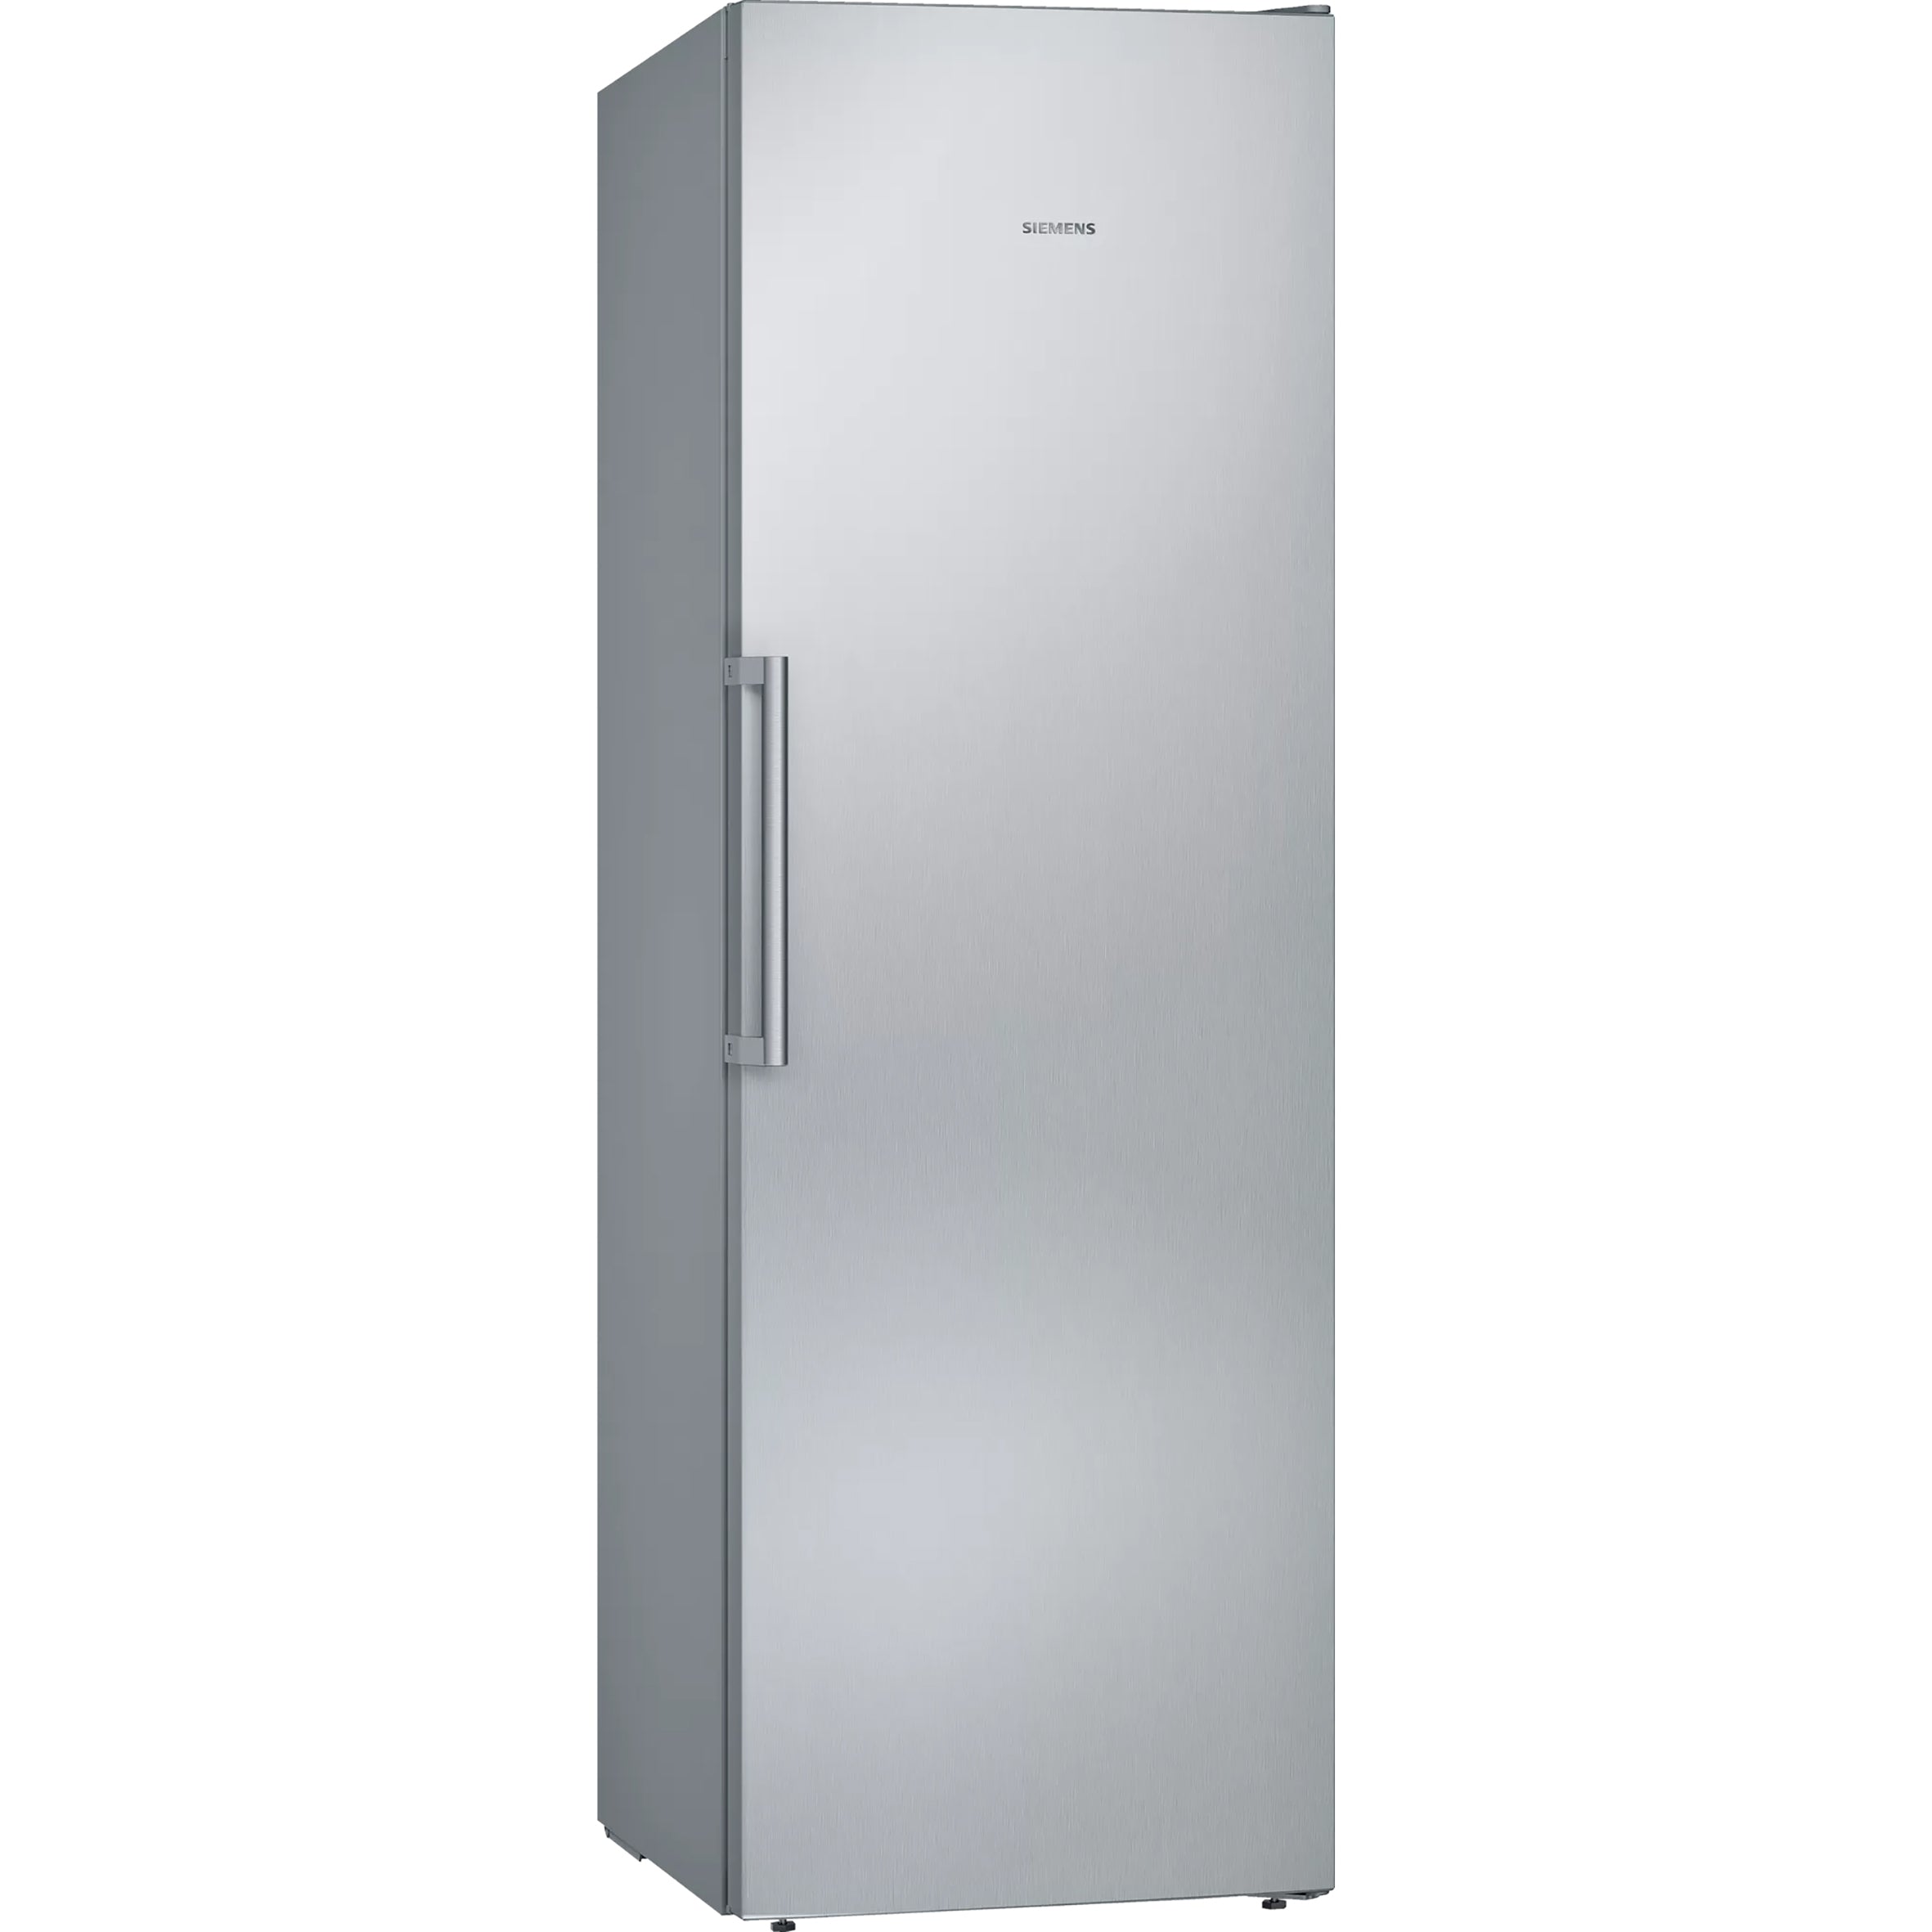 Siemens 237L Upright Freezer (Inox) GS36NVIFV